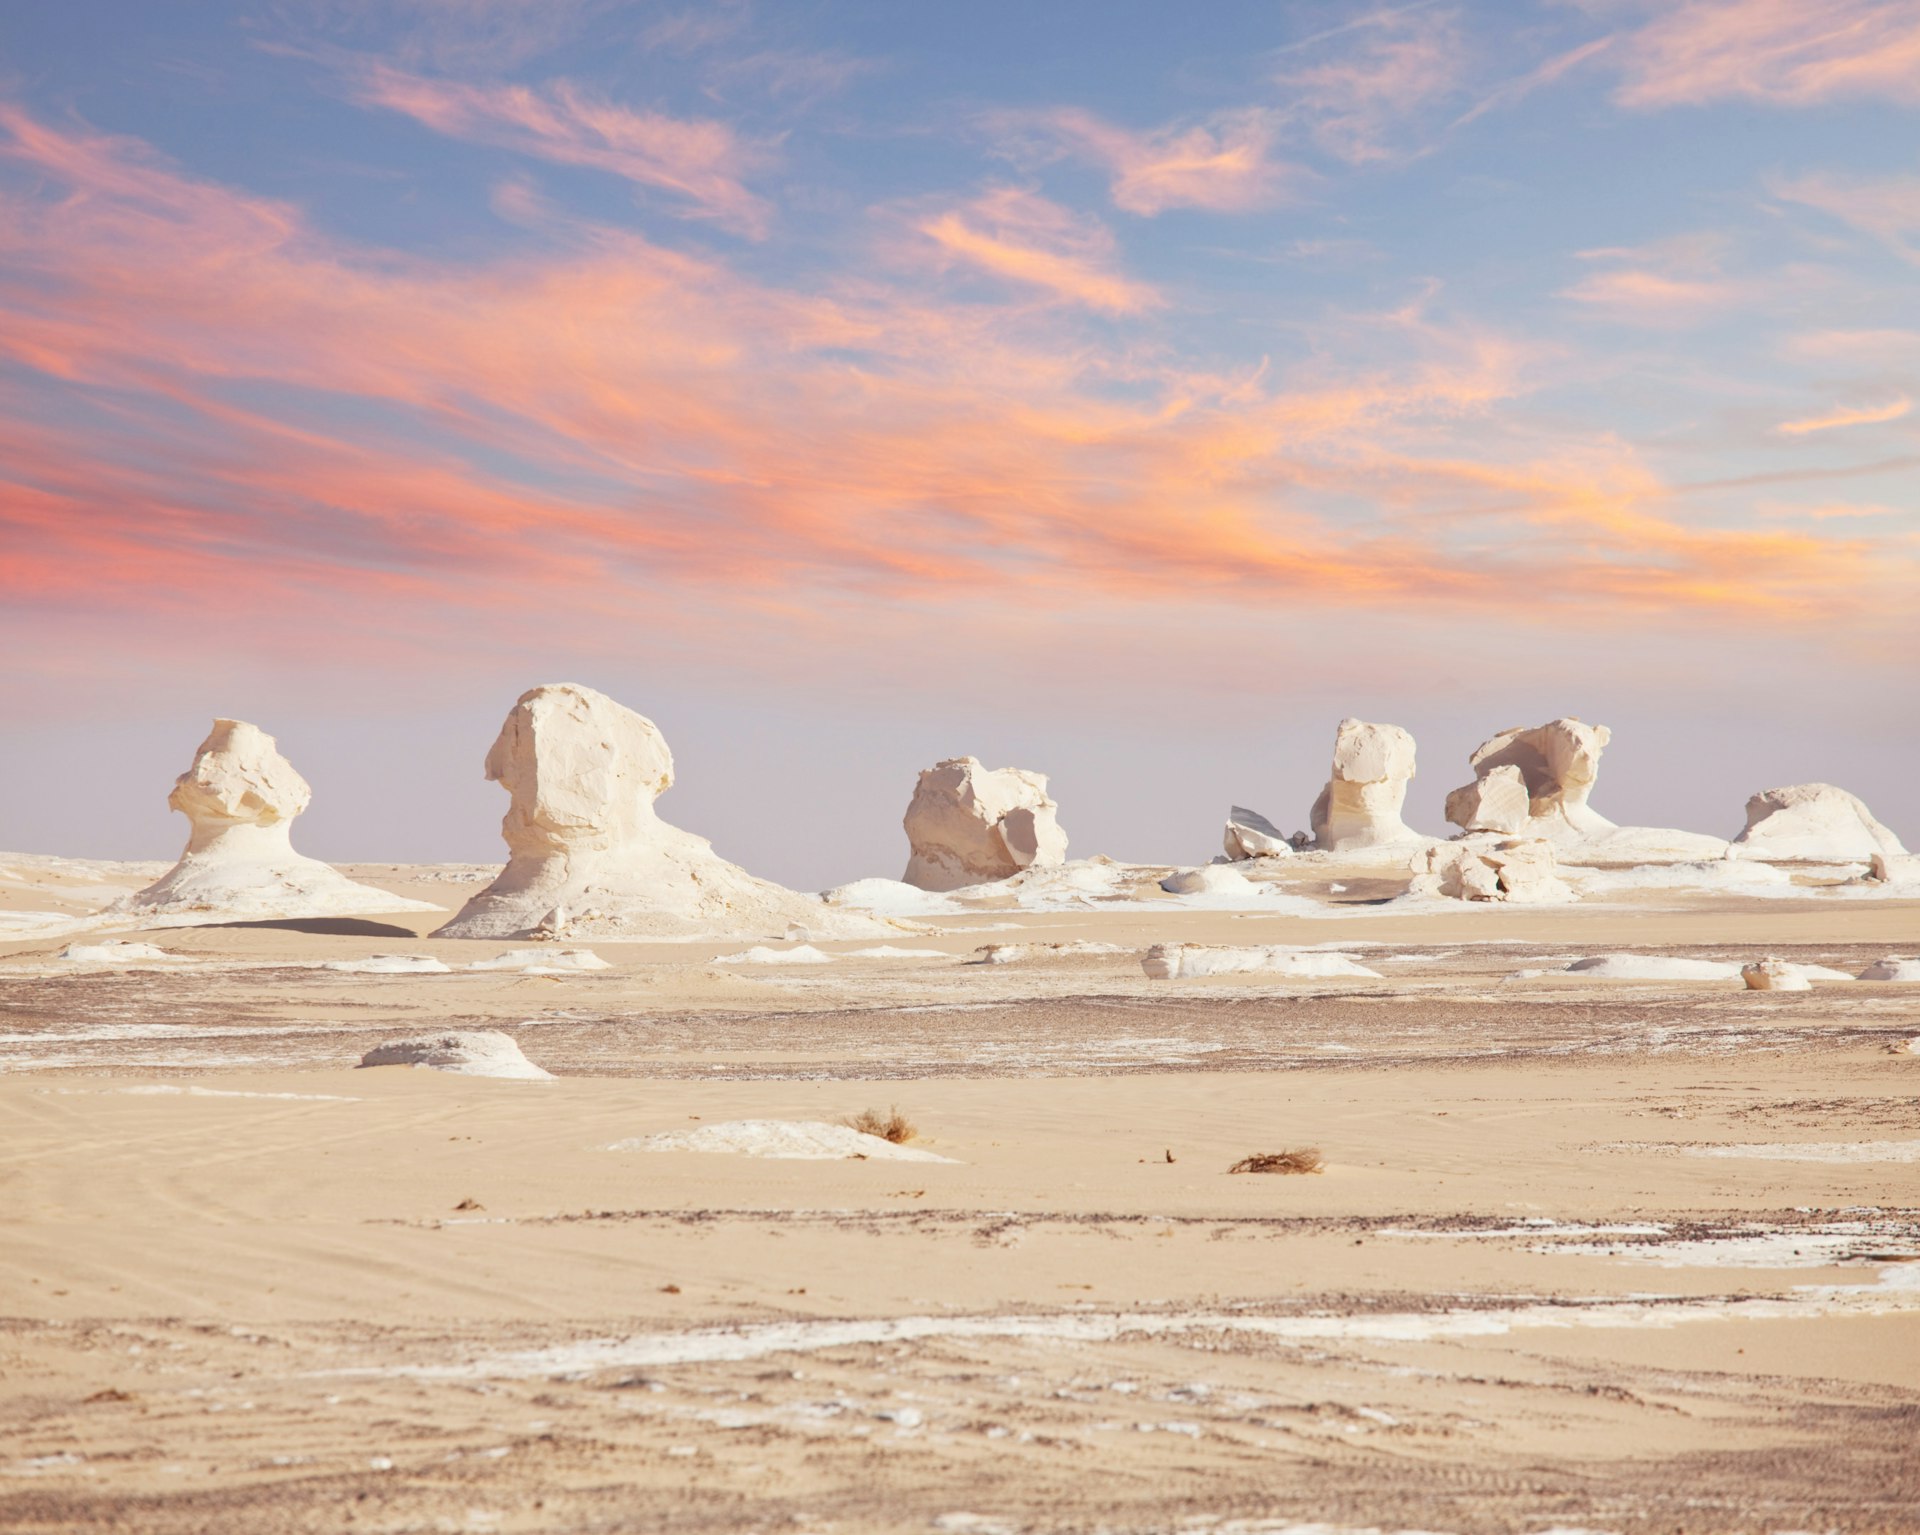 Chalk formation in White Desert National Park, Egypt